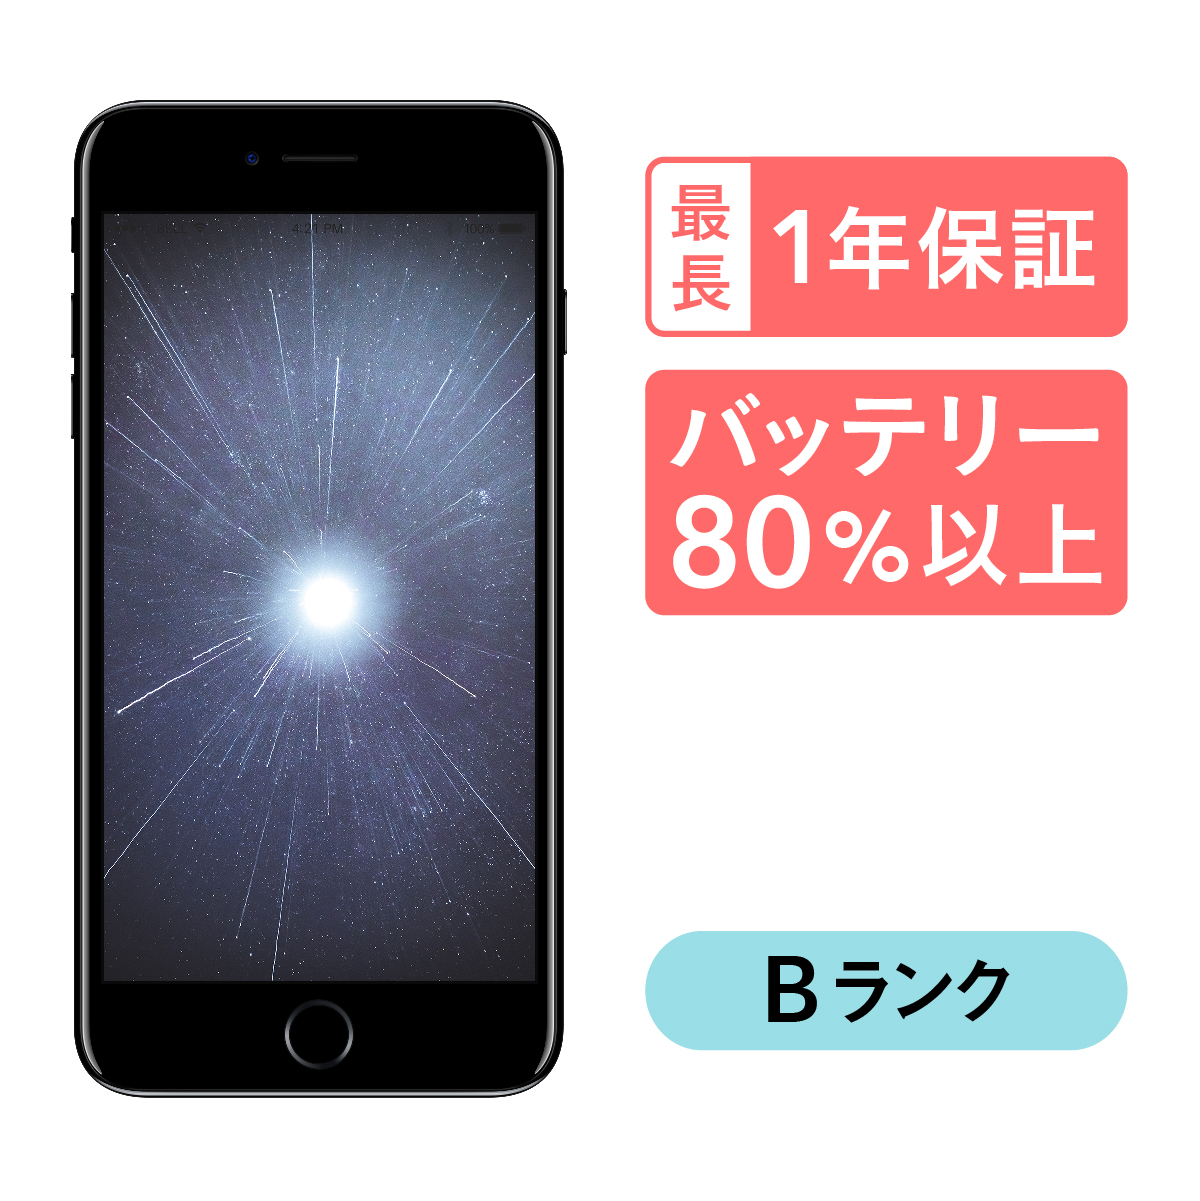 日本最級 iPhone Plus 128GB 中古 SIMフリー ブラック ゴールド レッド ローズゴールド シルバー docomo au  softbank